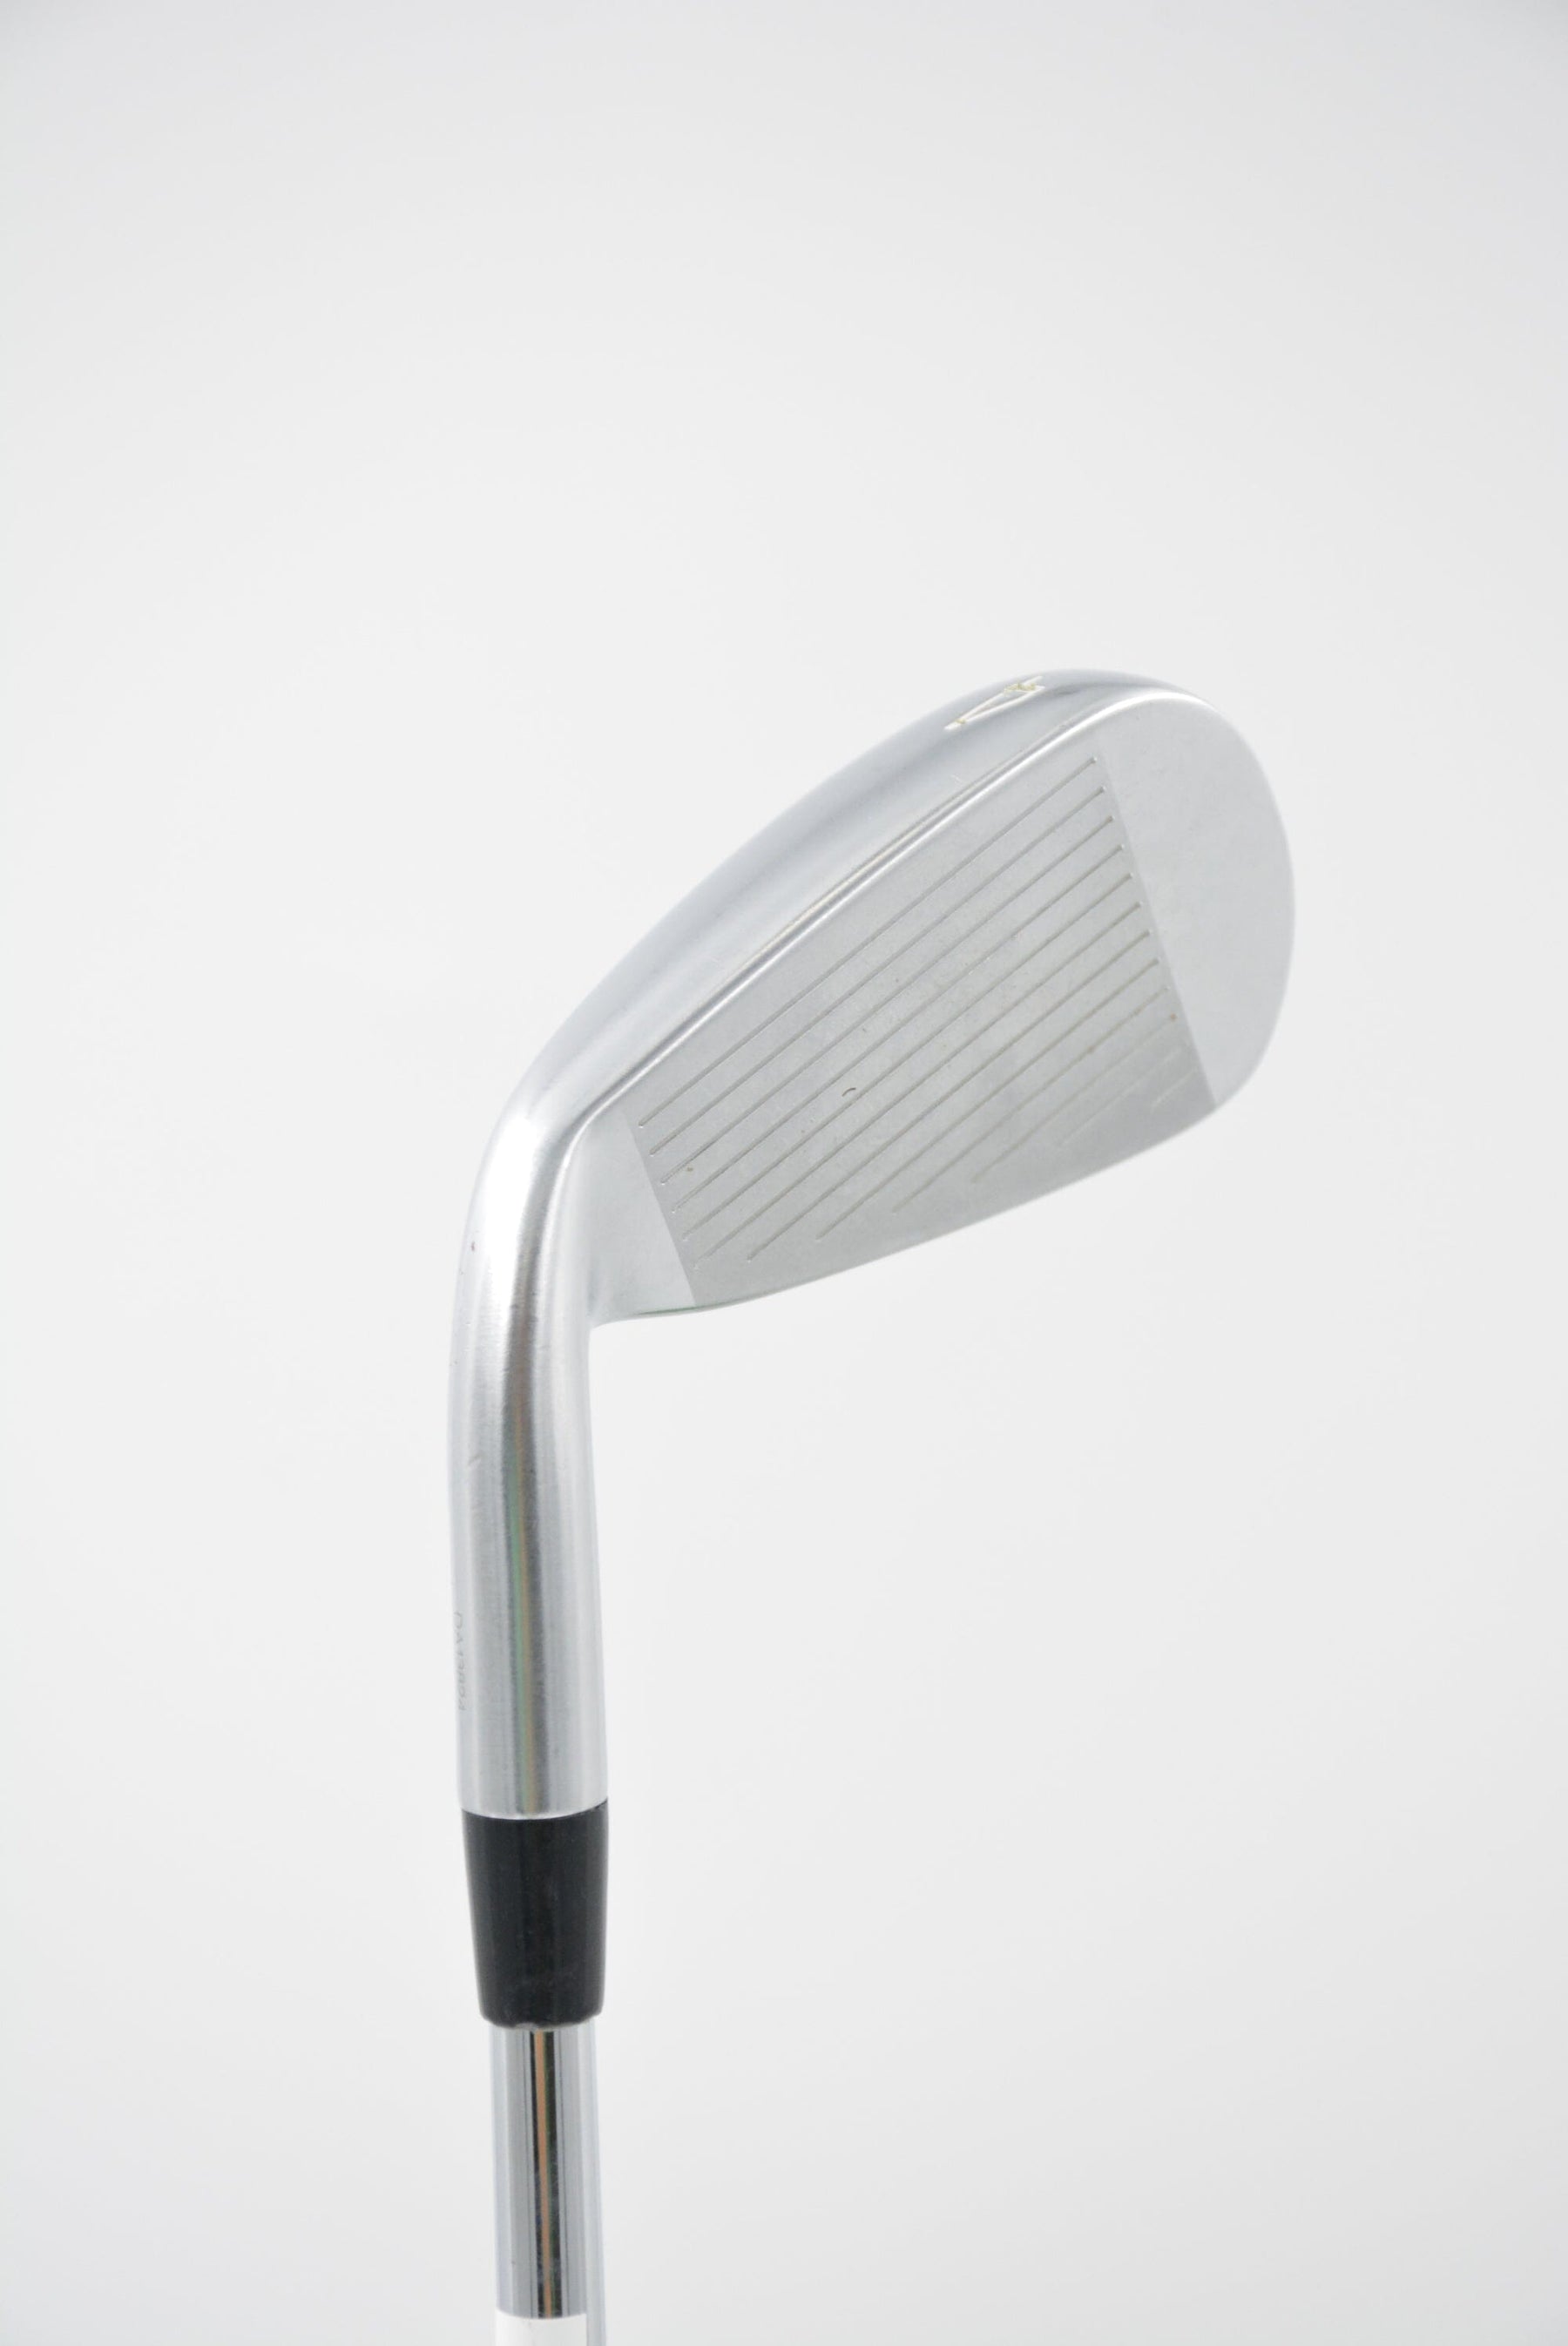 Mizuno JPX 919 Hot Metal 4 Iron S Flex Golf Clubs GolfRoots 